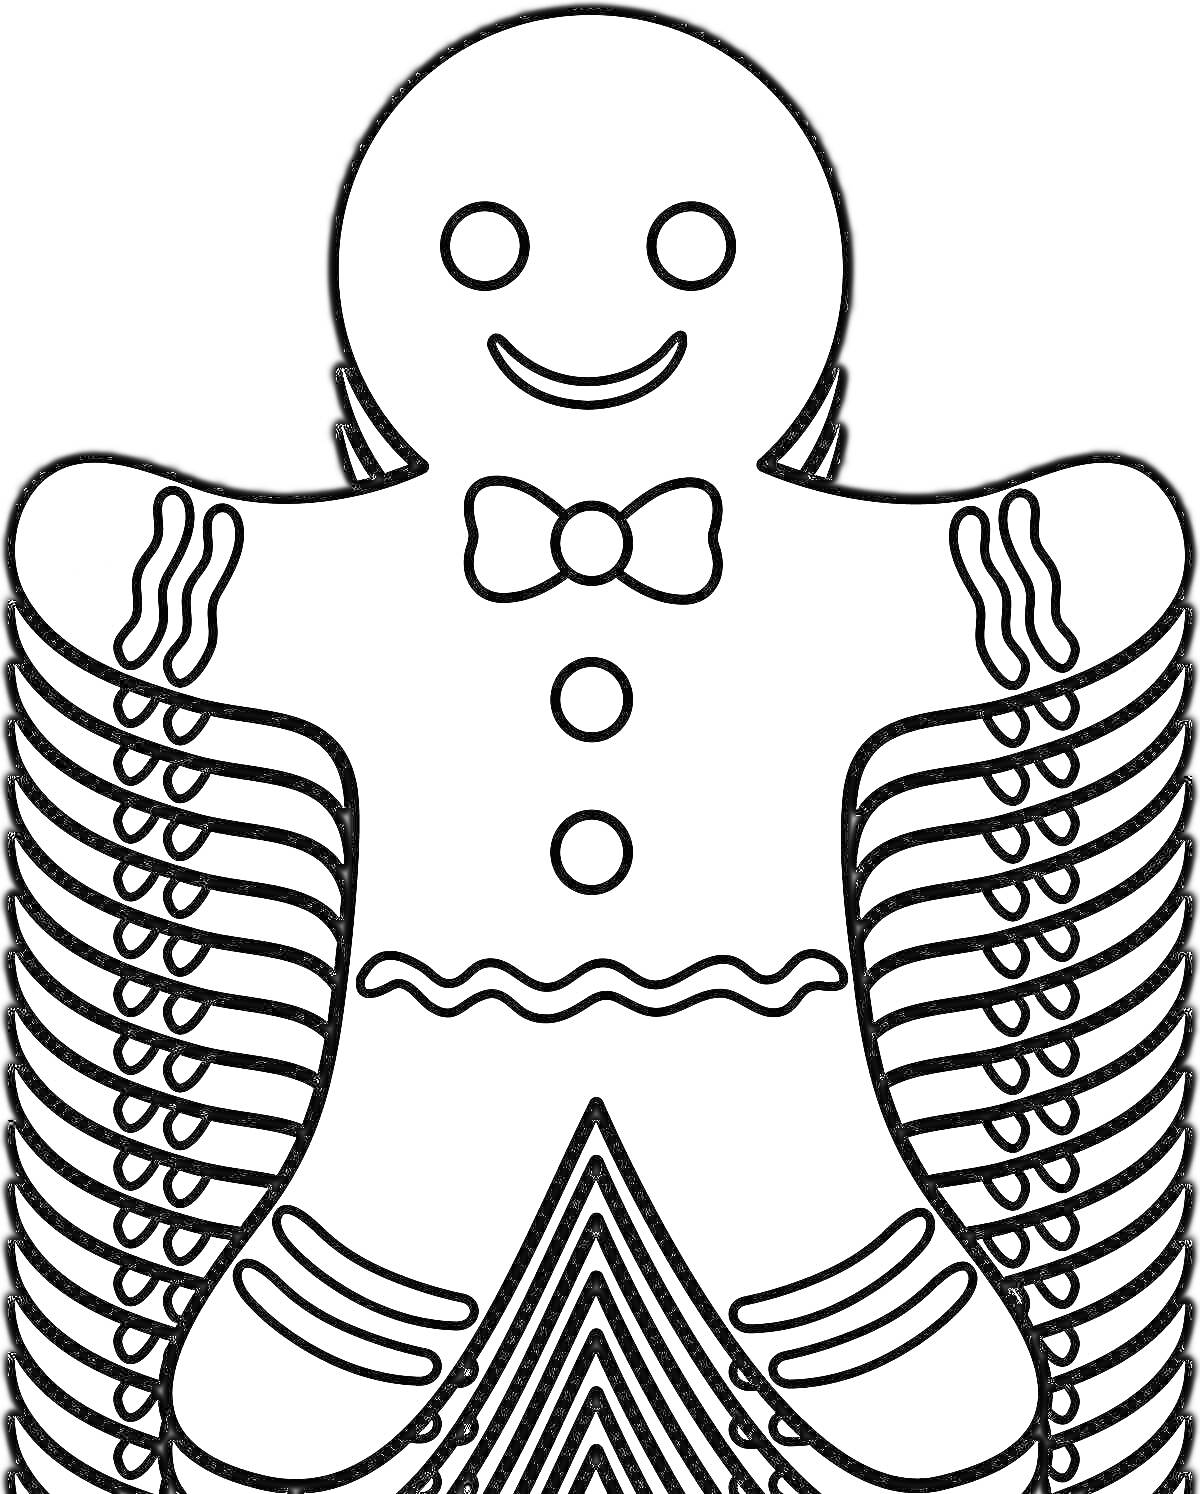 Раскраска Пряничный человечек с бабочкой и пуговицами, с узорными руками и ногами